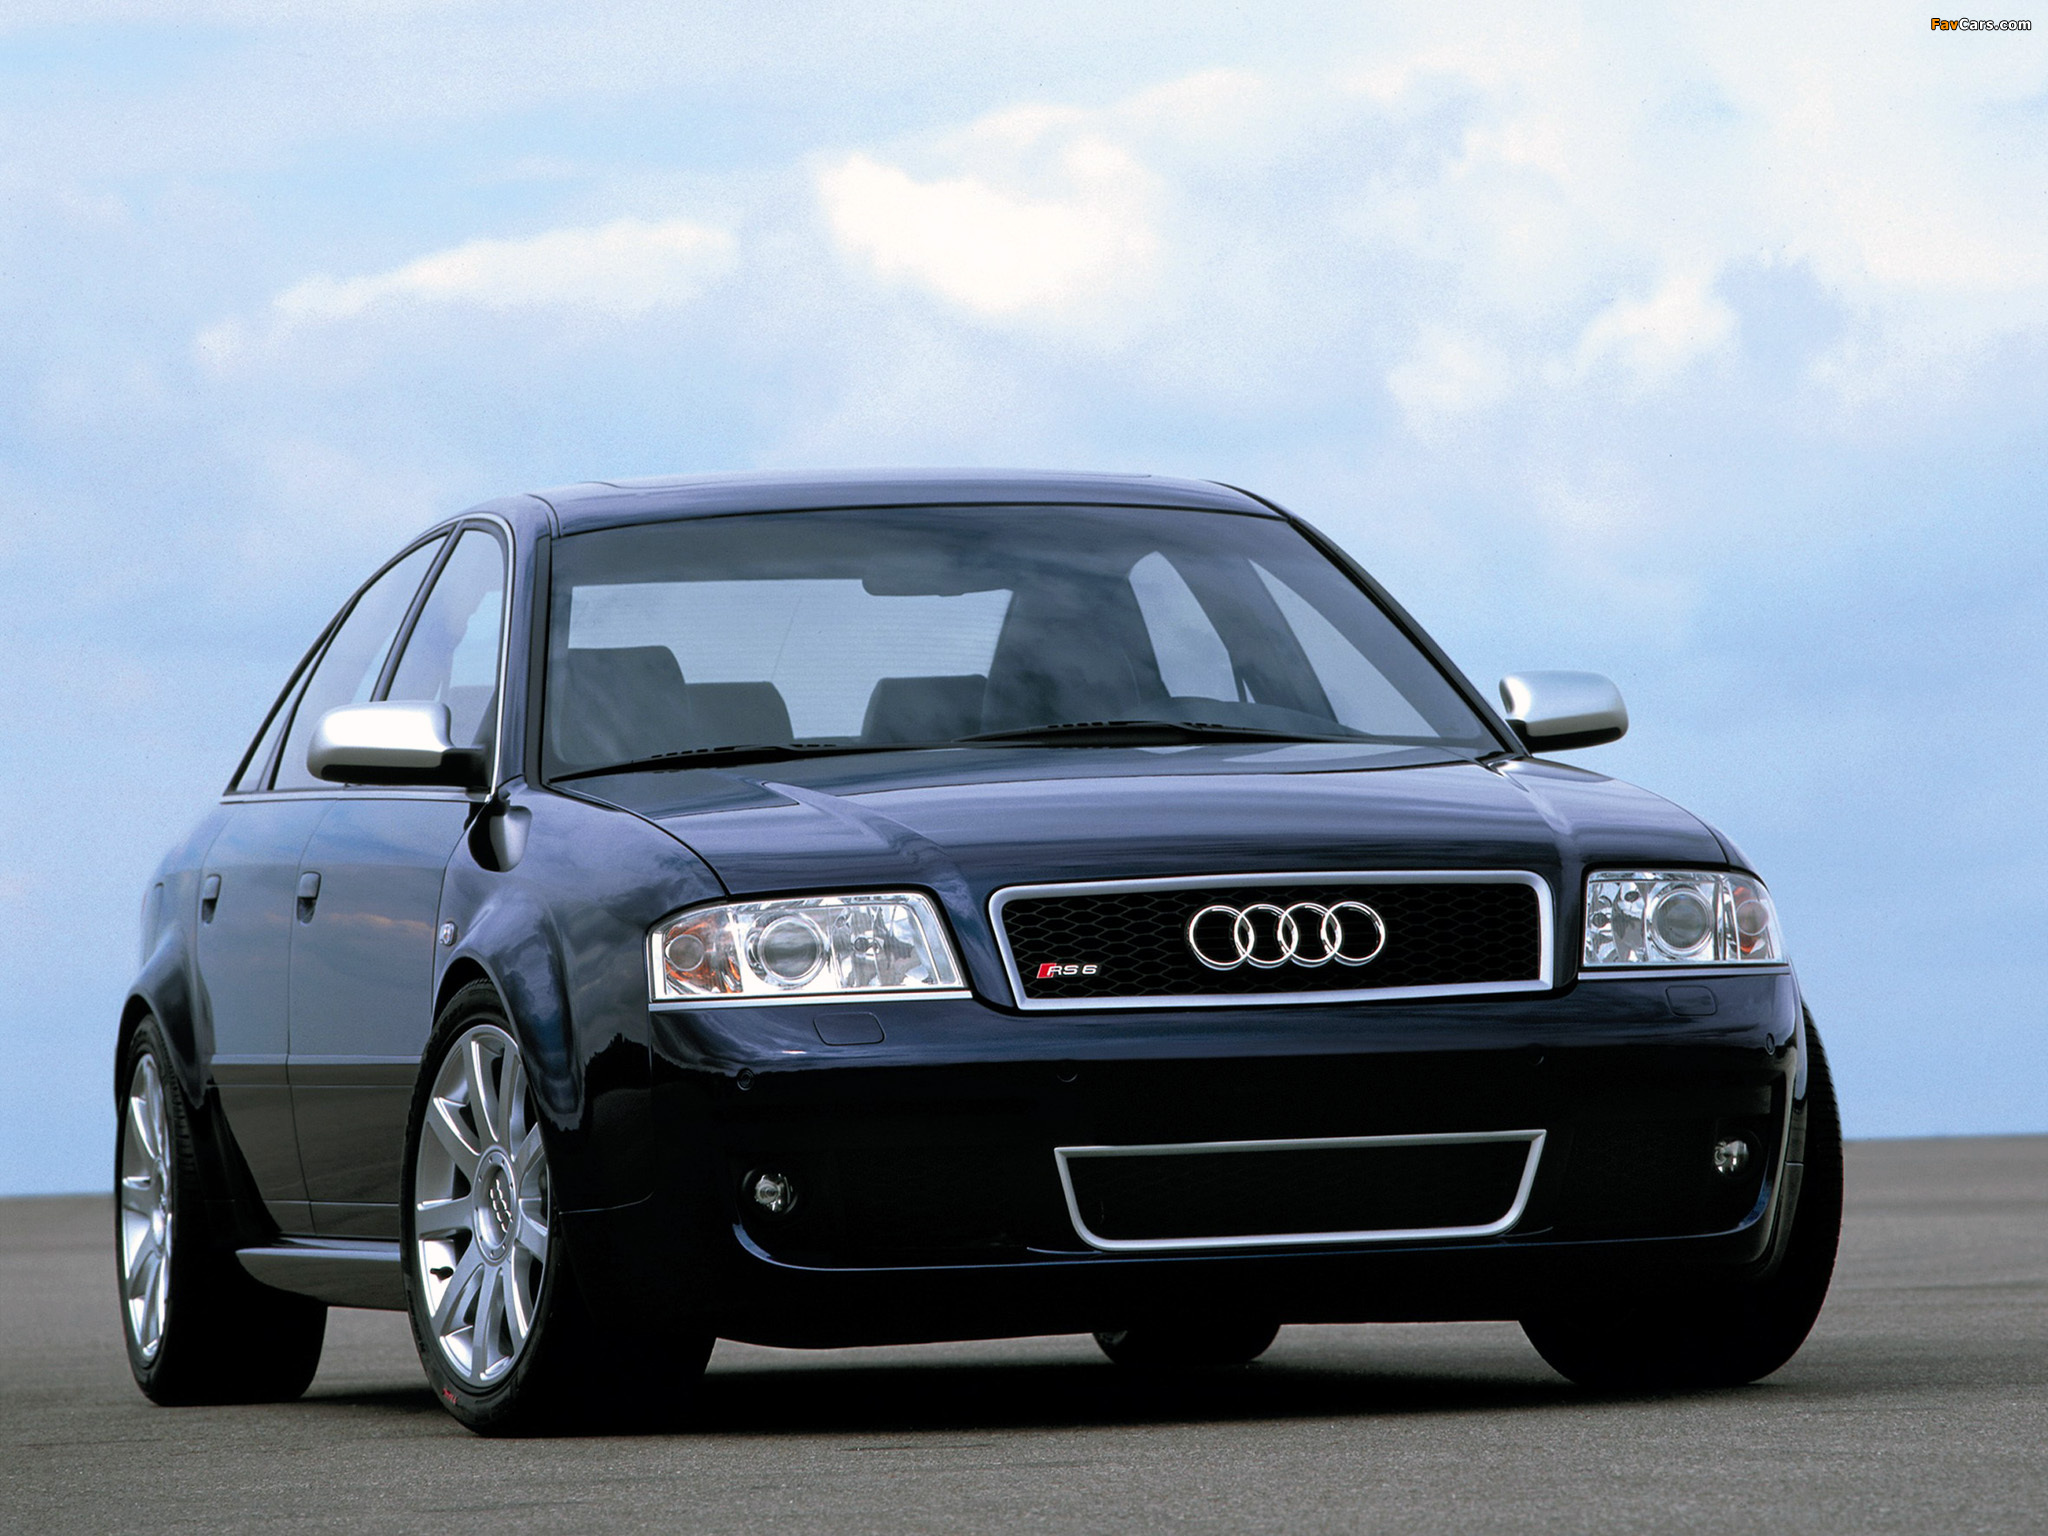 Ауди универсал 2002. Audi rs6 2002. Audi a6 c5 2003. Ауди РС 6 2002 седан. Audi a6 rs6 c5.